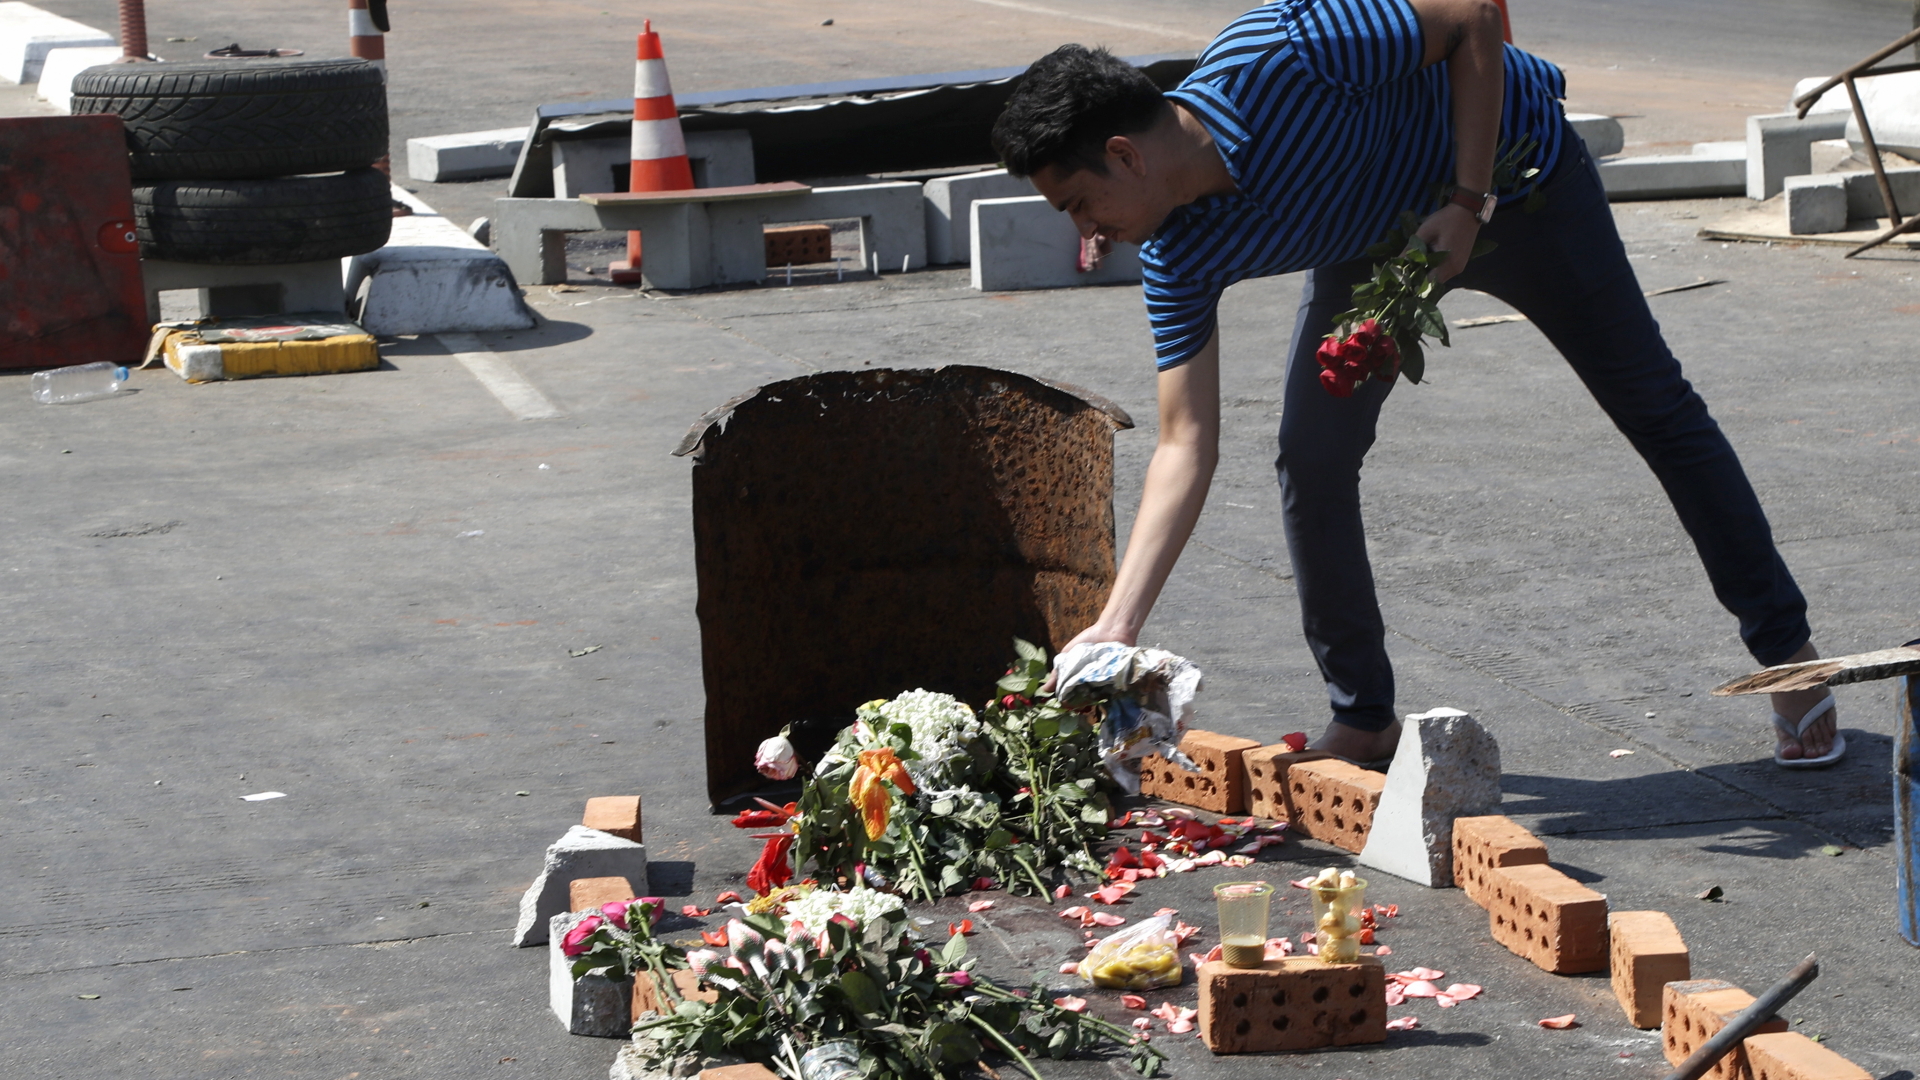 Mann legt Blumen auf die Straße zum Gedenken an ein Opfer | EPA